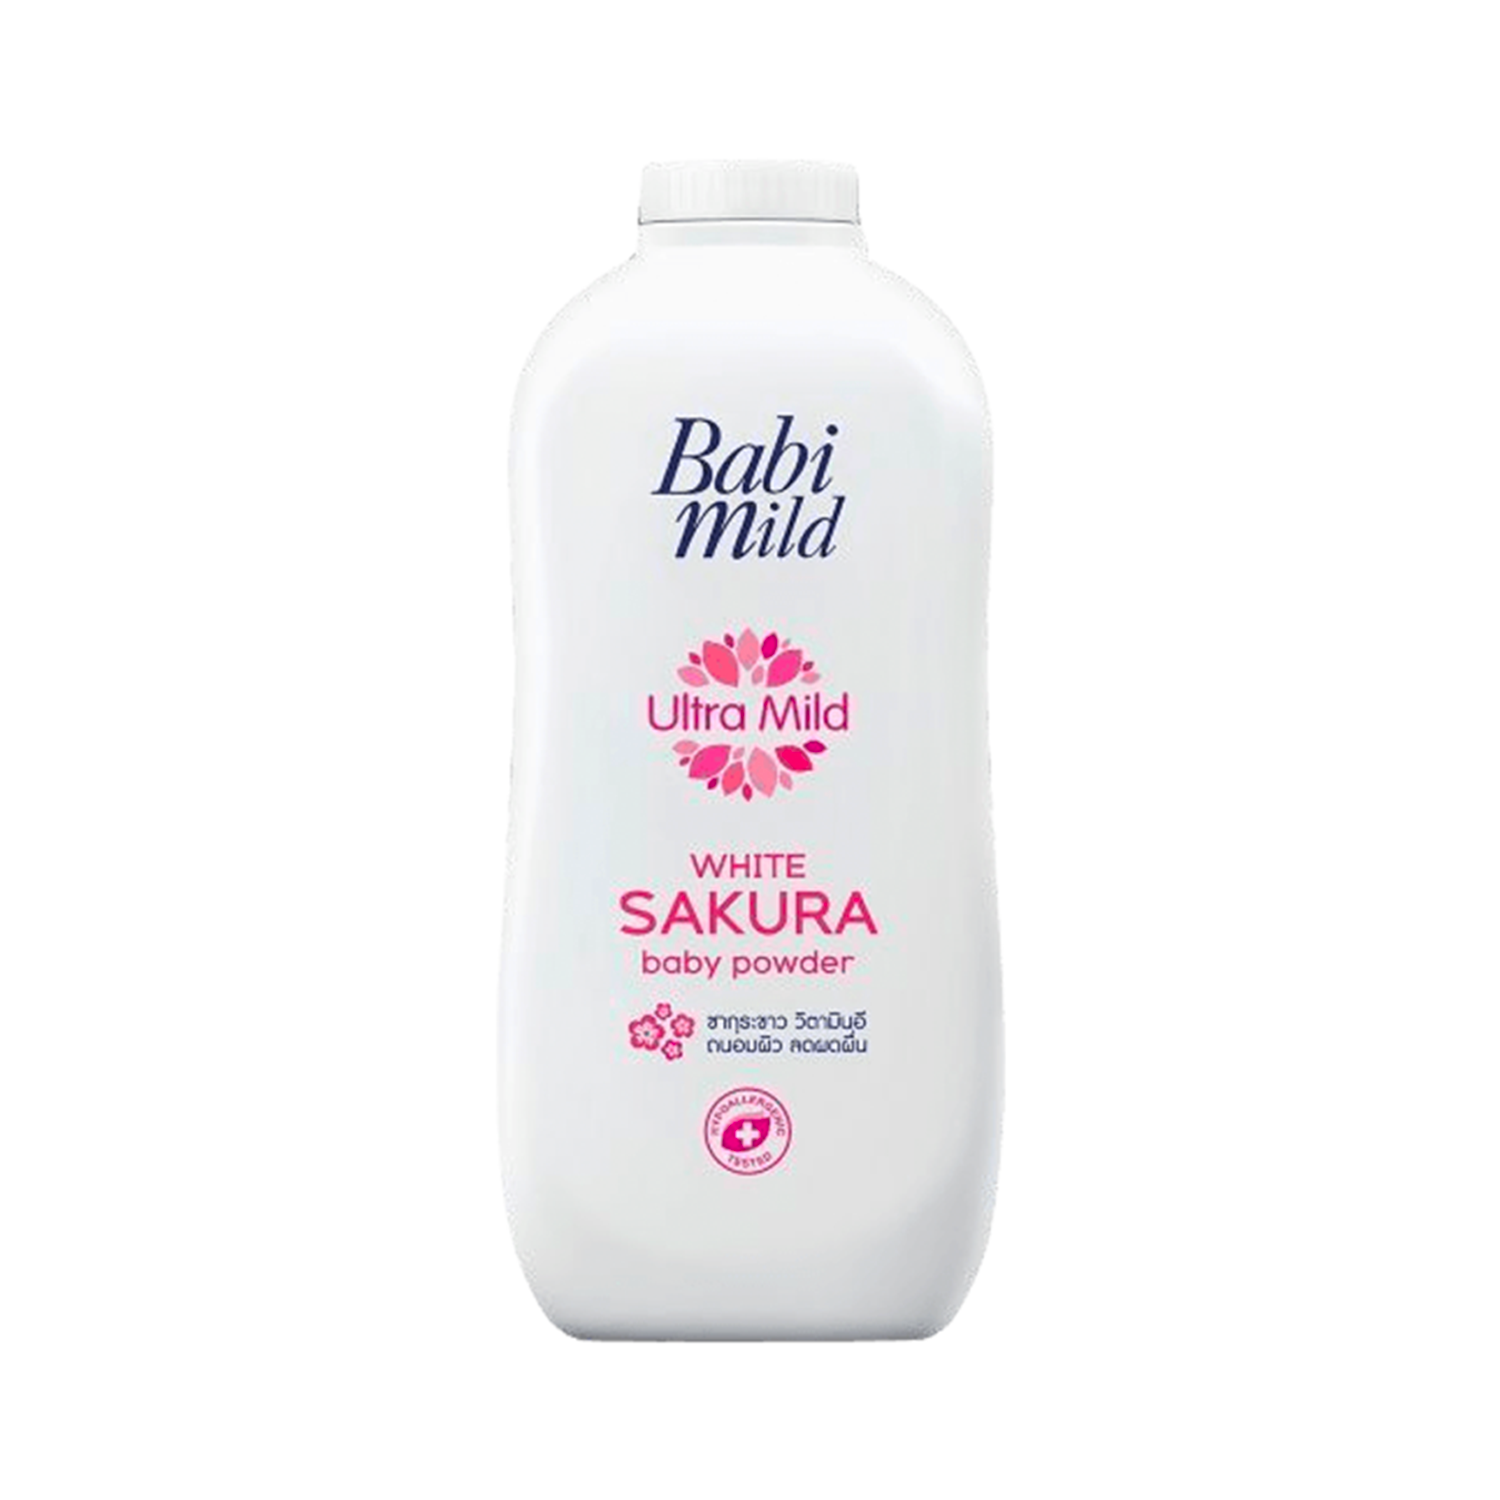 Babi Mild Baby Powder-380gm (Sweety Pink, Double Milk, Bioganik, White Sakura, Sweet Mild)